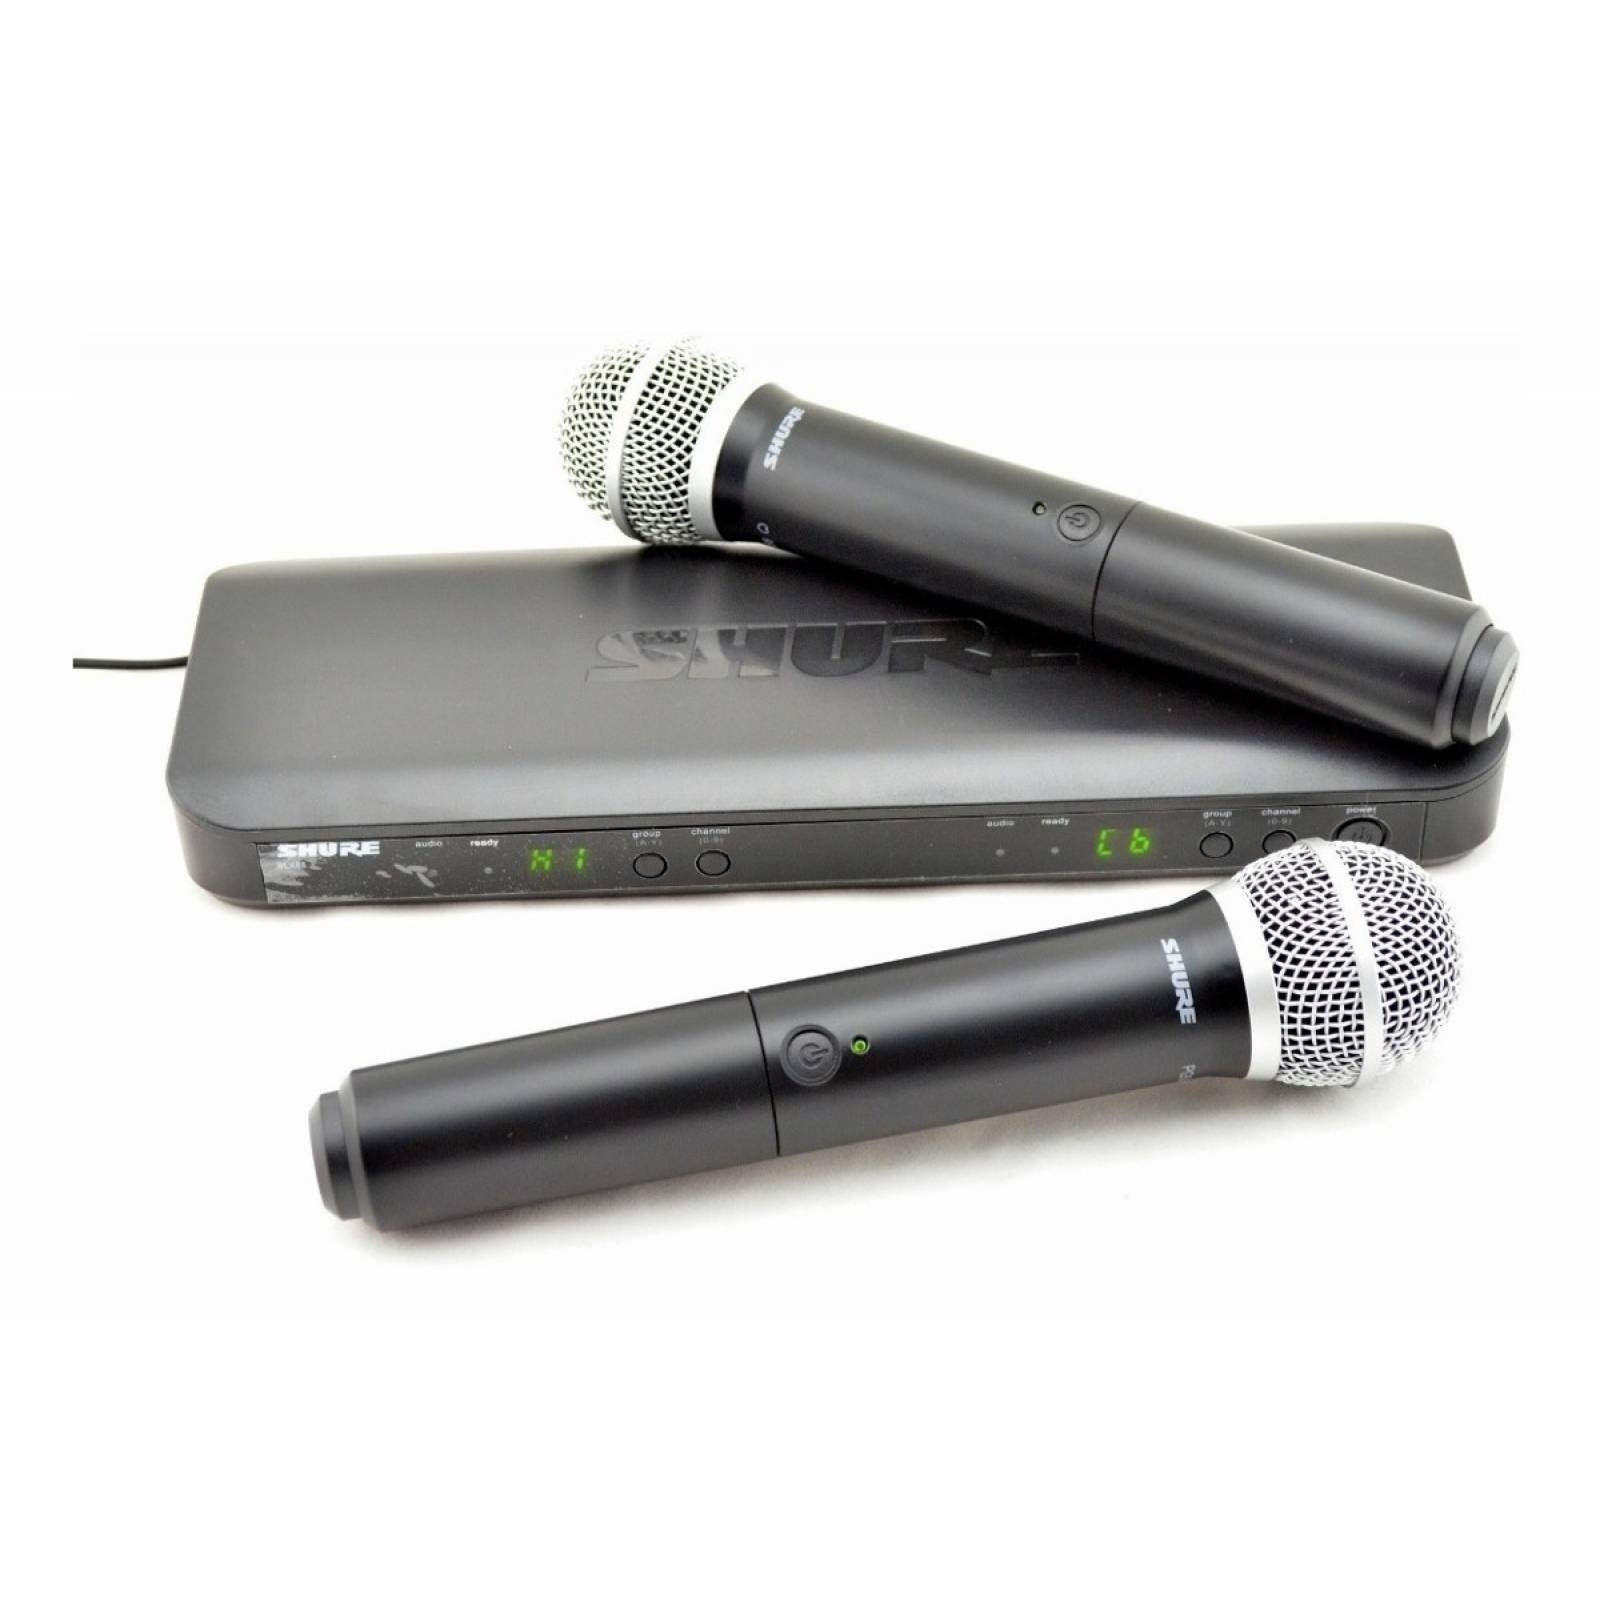 SHURE BLX288/PG58 - sistema micrófono inalámbrico doble de mano